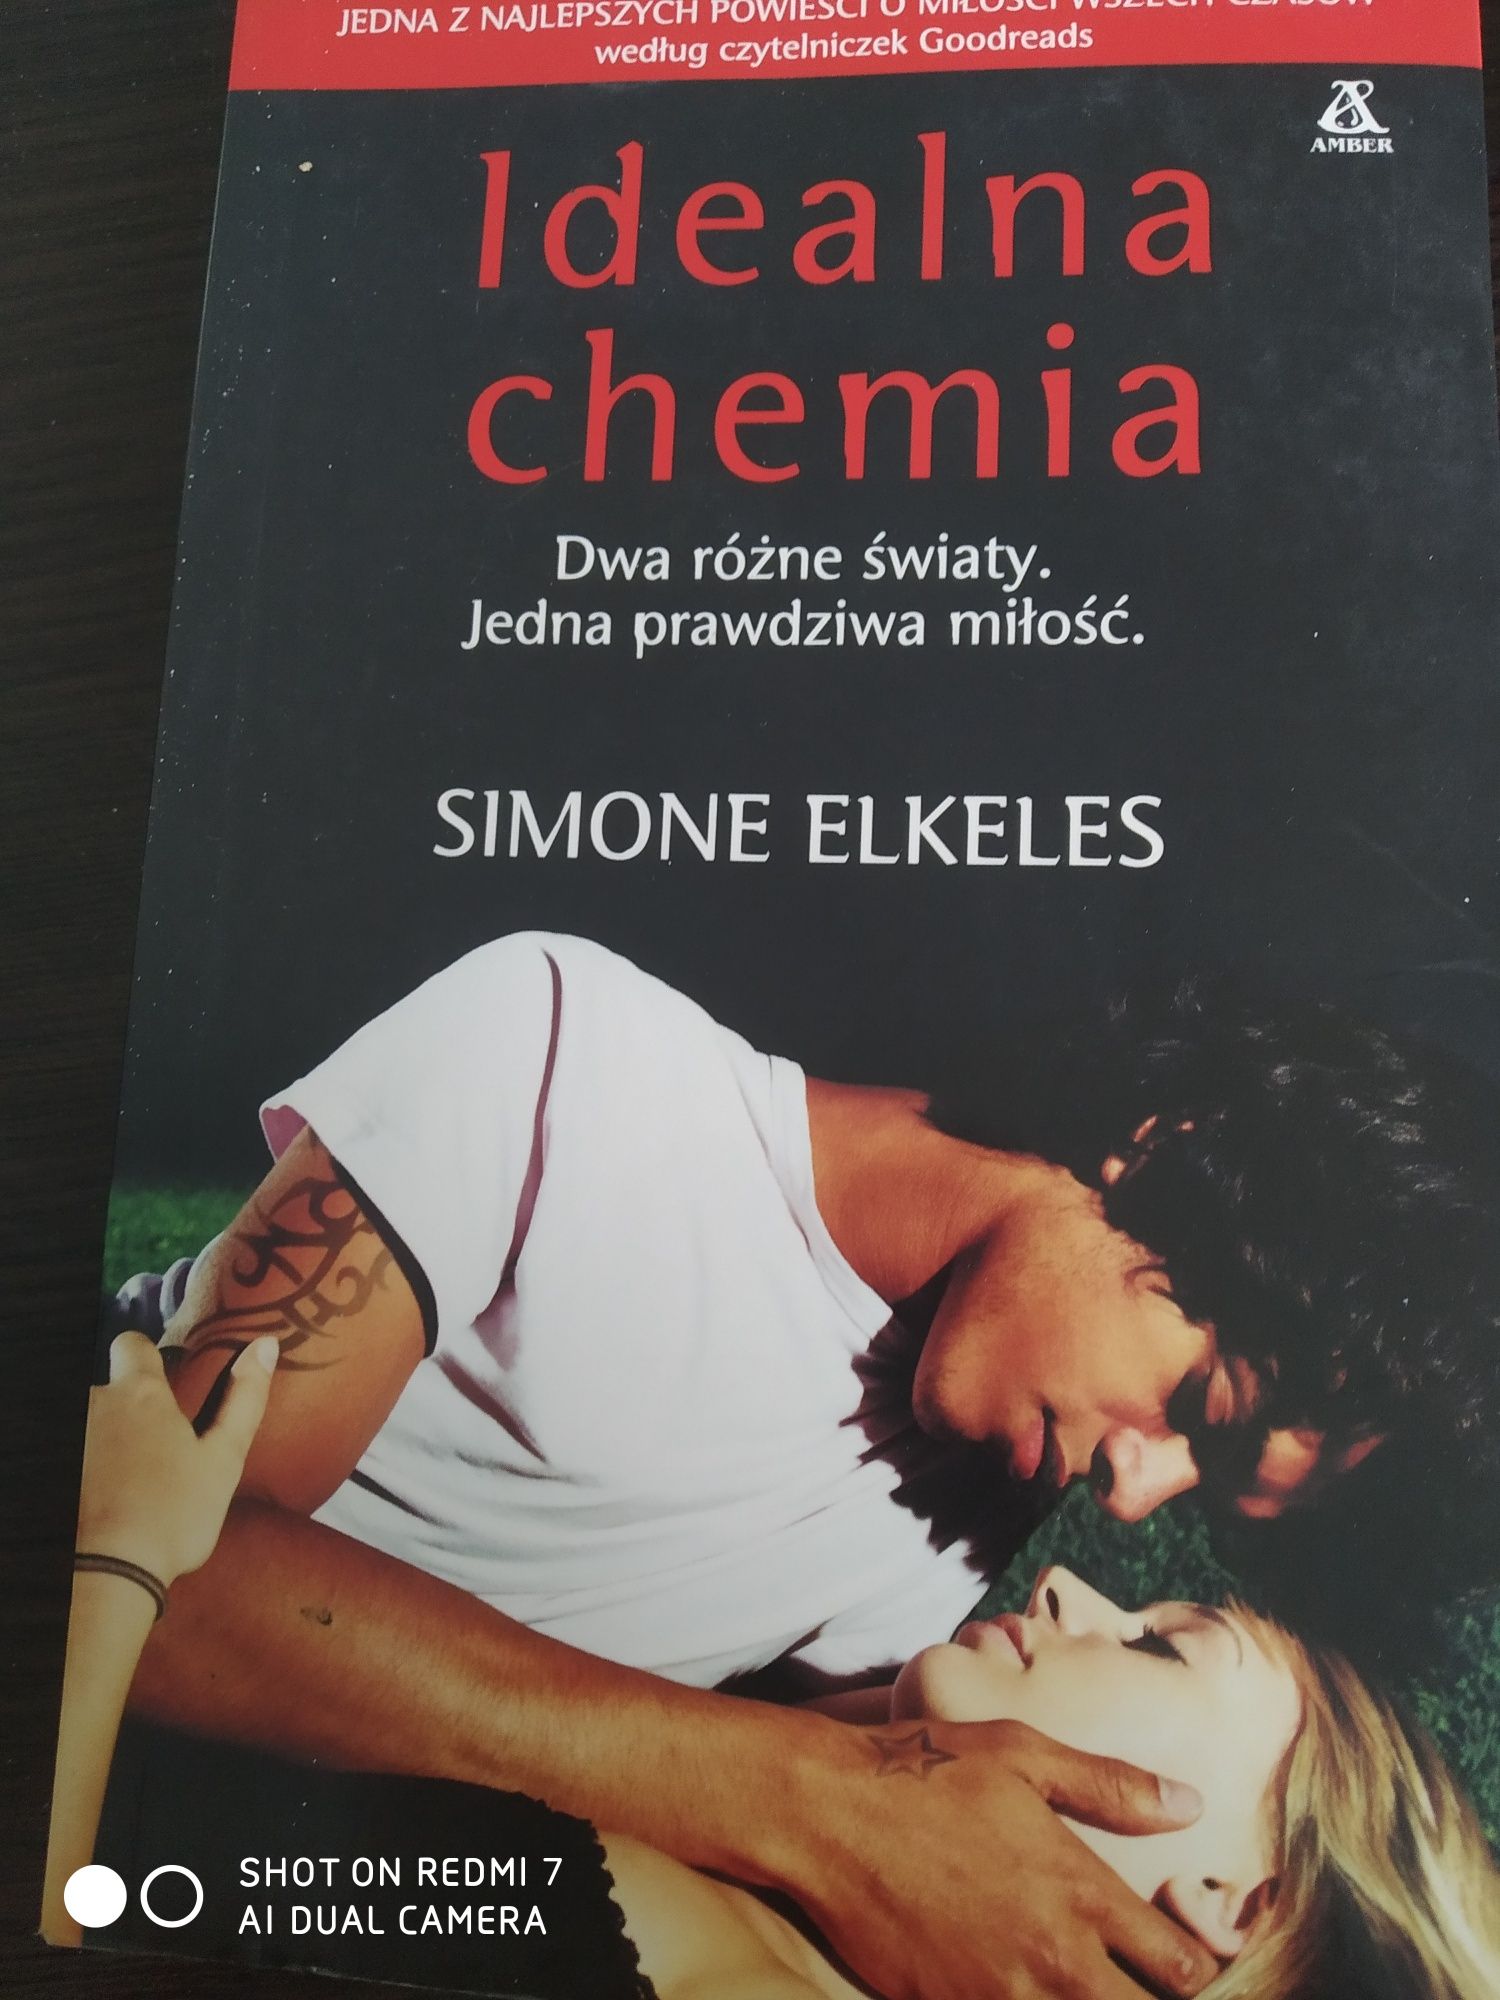 Książka "Idealna chemia" Simone Elkeles